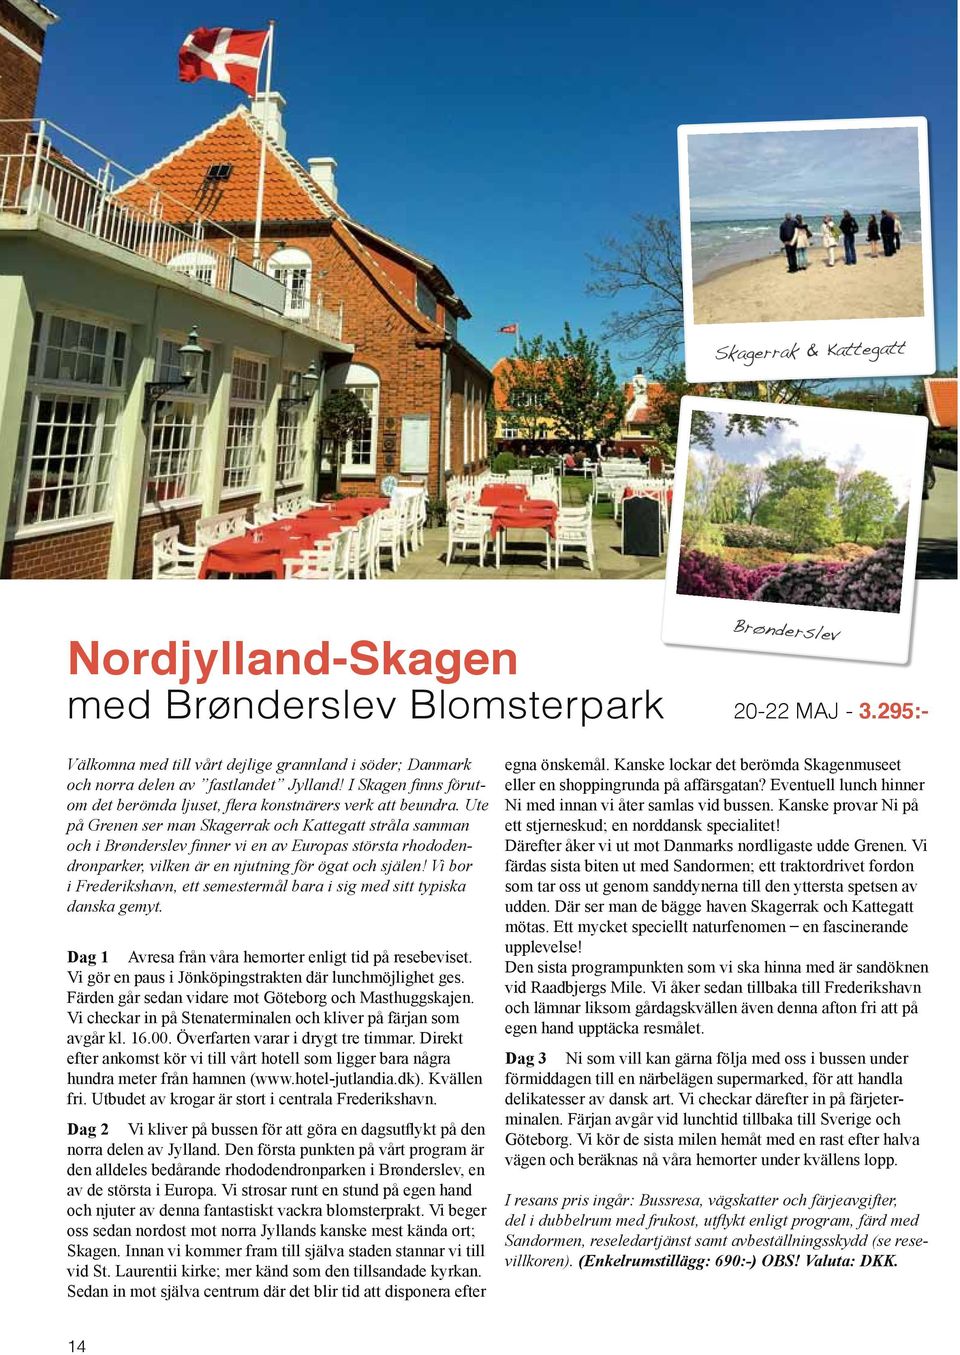 Ute på Grenen ser man Skagerrak och Kattegatt stråla samman och i Brønderslev finner vi en av Europas största rhododendronparker, vilken är en njutning för ögat och själen!